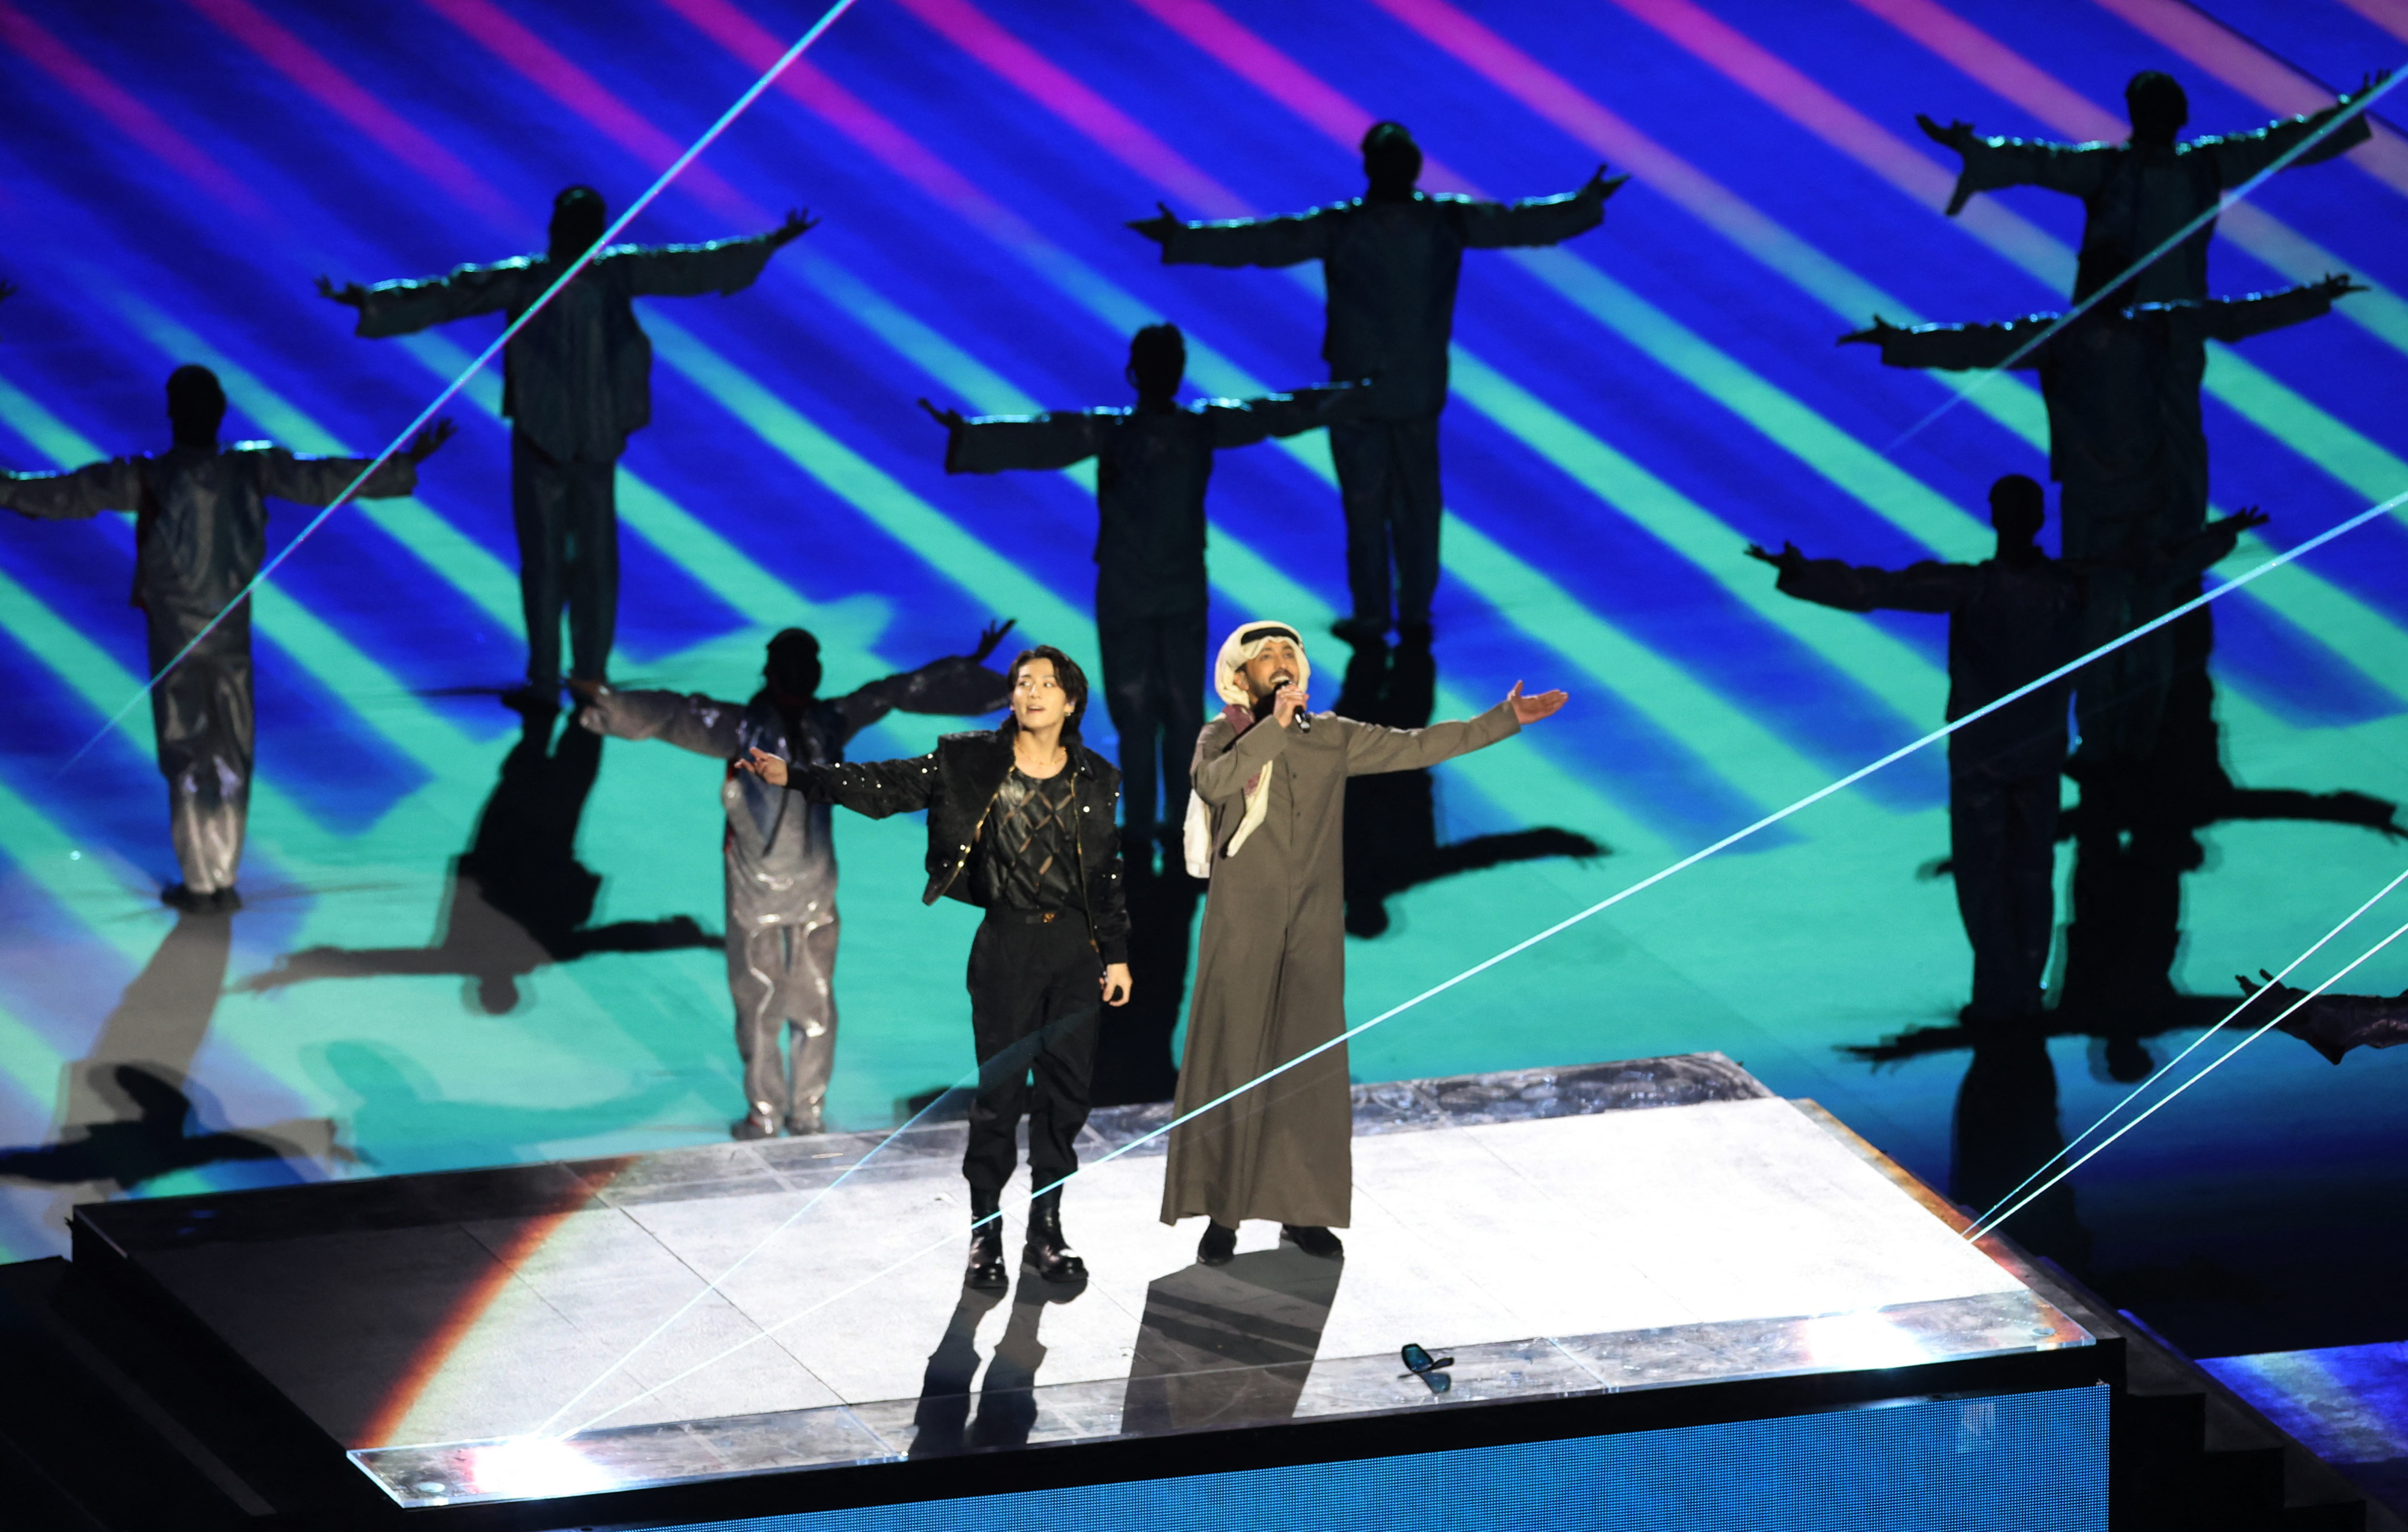 La performance musical estuvo protagonizada por Jung Kook, cantante y bailarín surcoreano representativo del grupo BTS, y Fahad Al Kubaisi, cantante, productor discográfico, modelo de moda y activista qatarí (REUTERS/Amr Abdallah Dalsh)